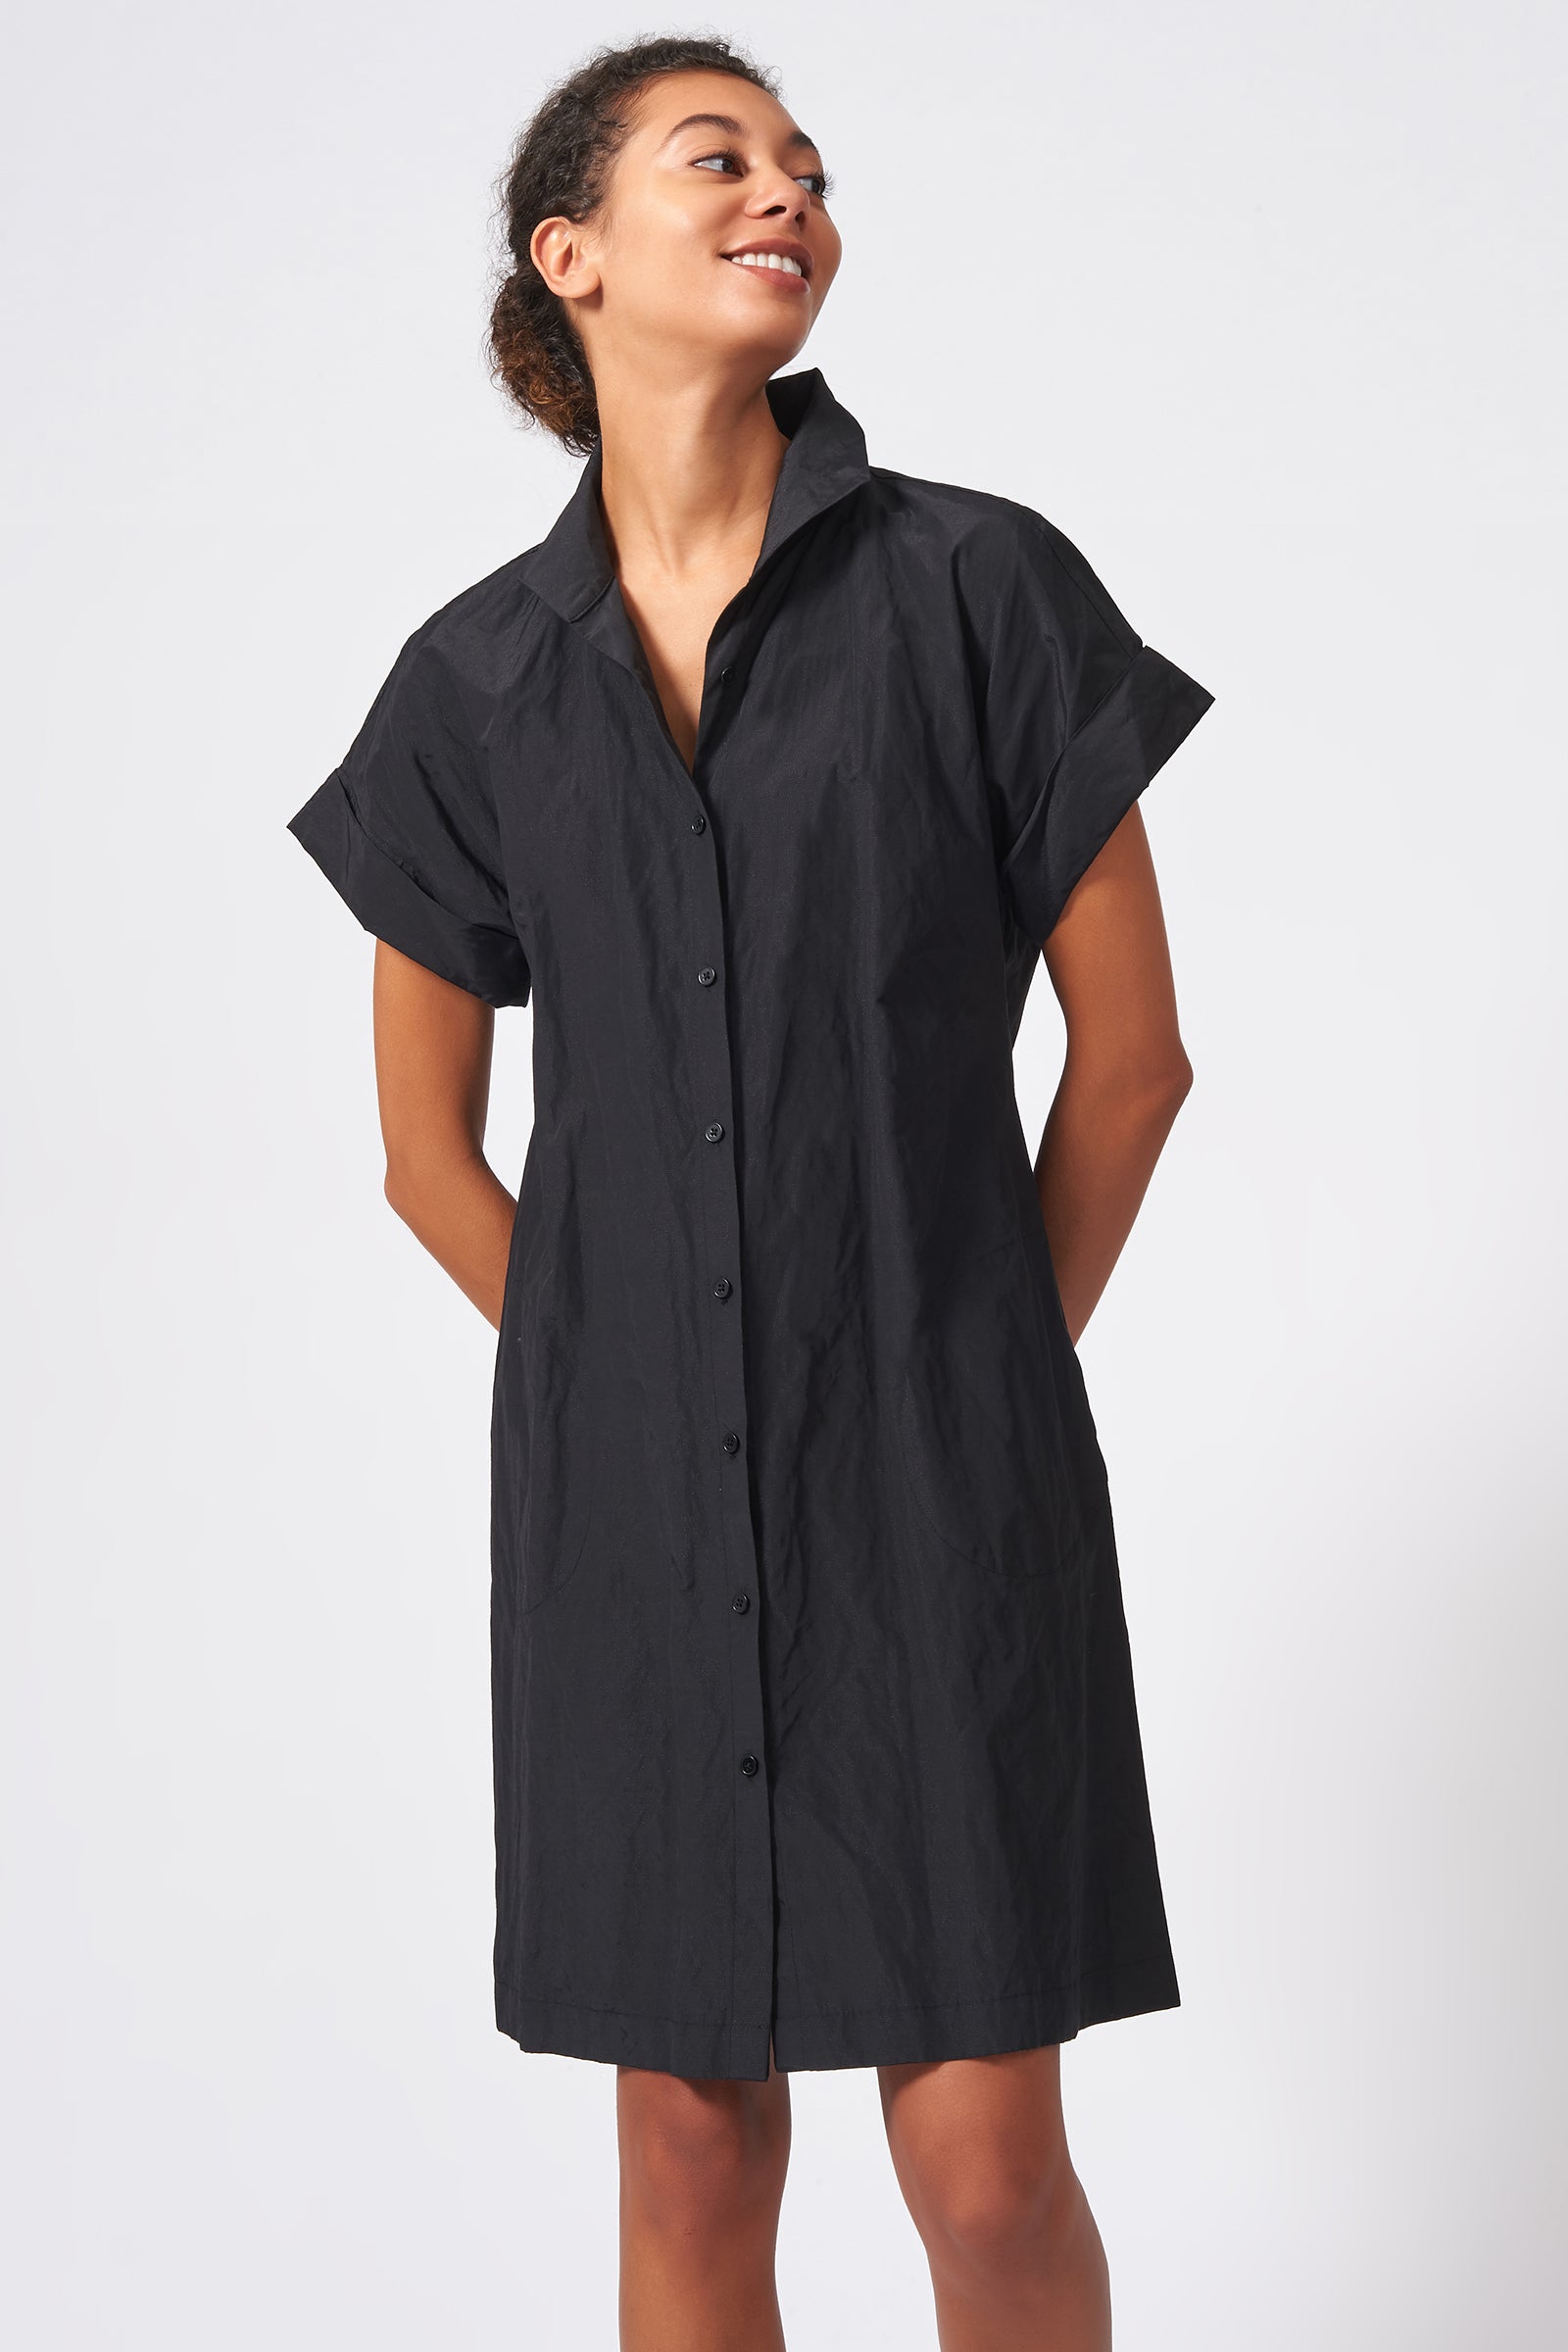 Kal Rieman Kimono Shirt Dress Cotton Nylon in Black on Model Front View